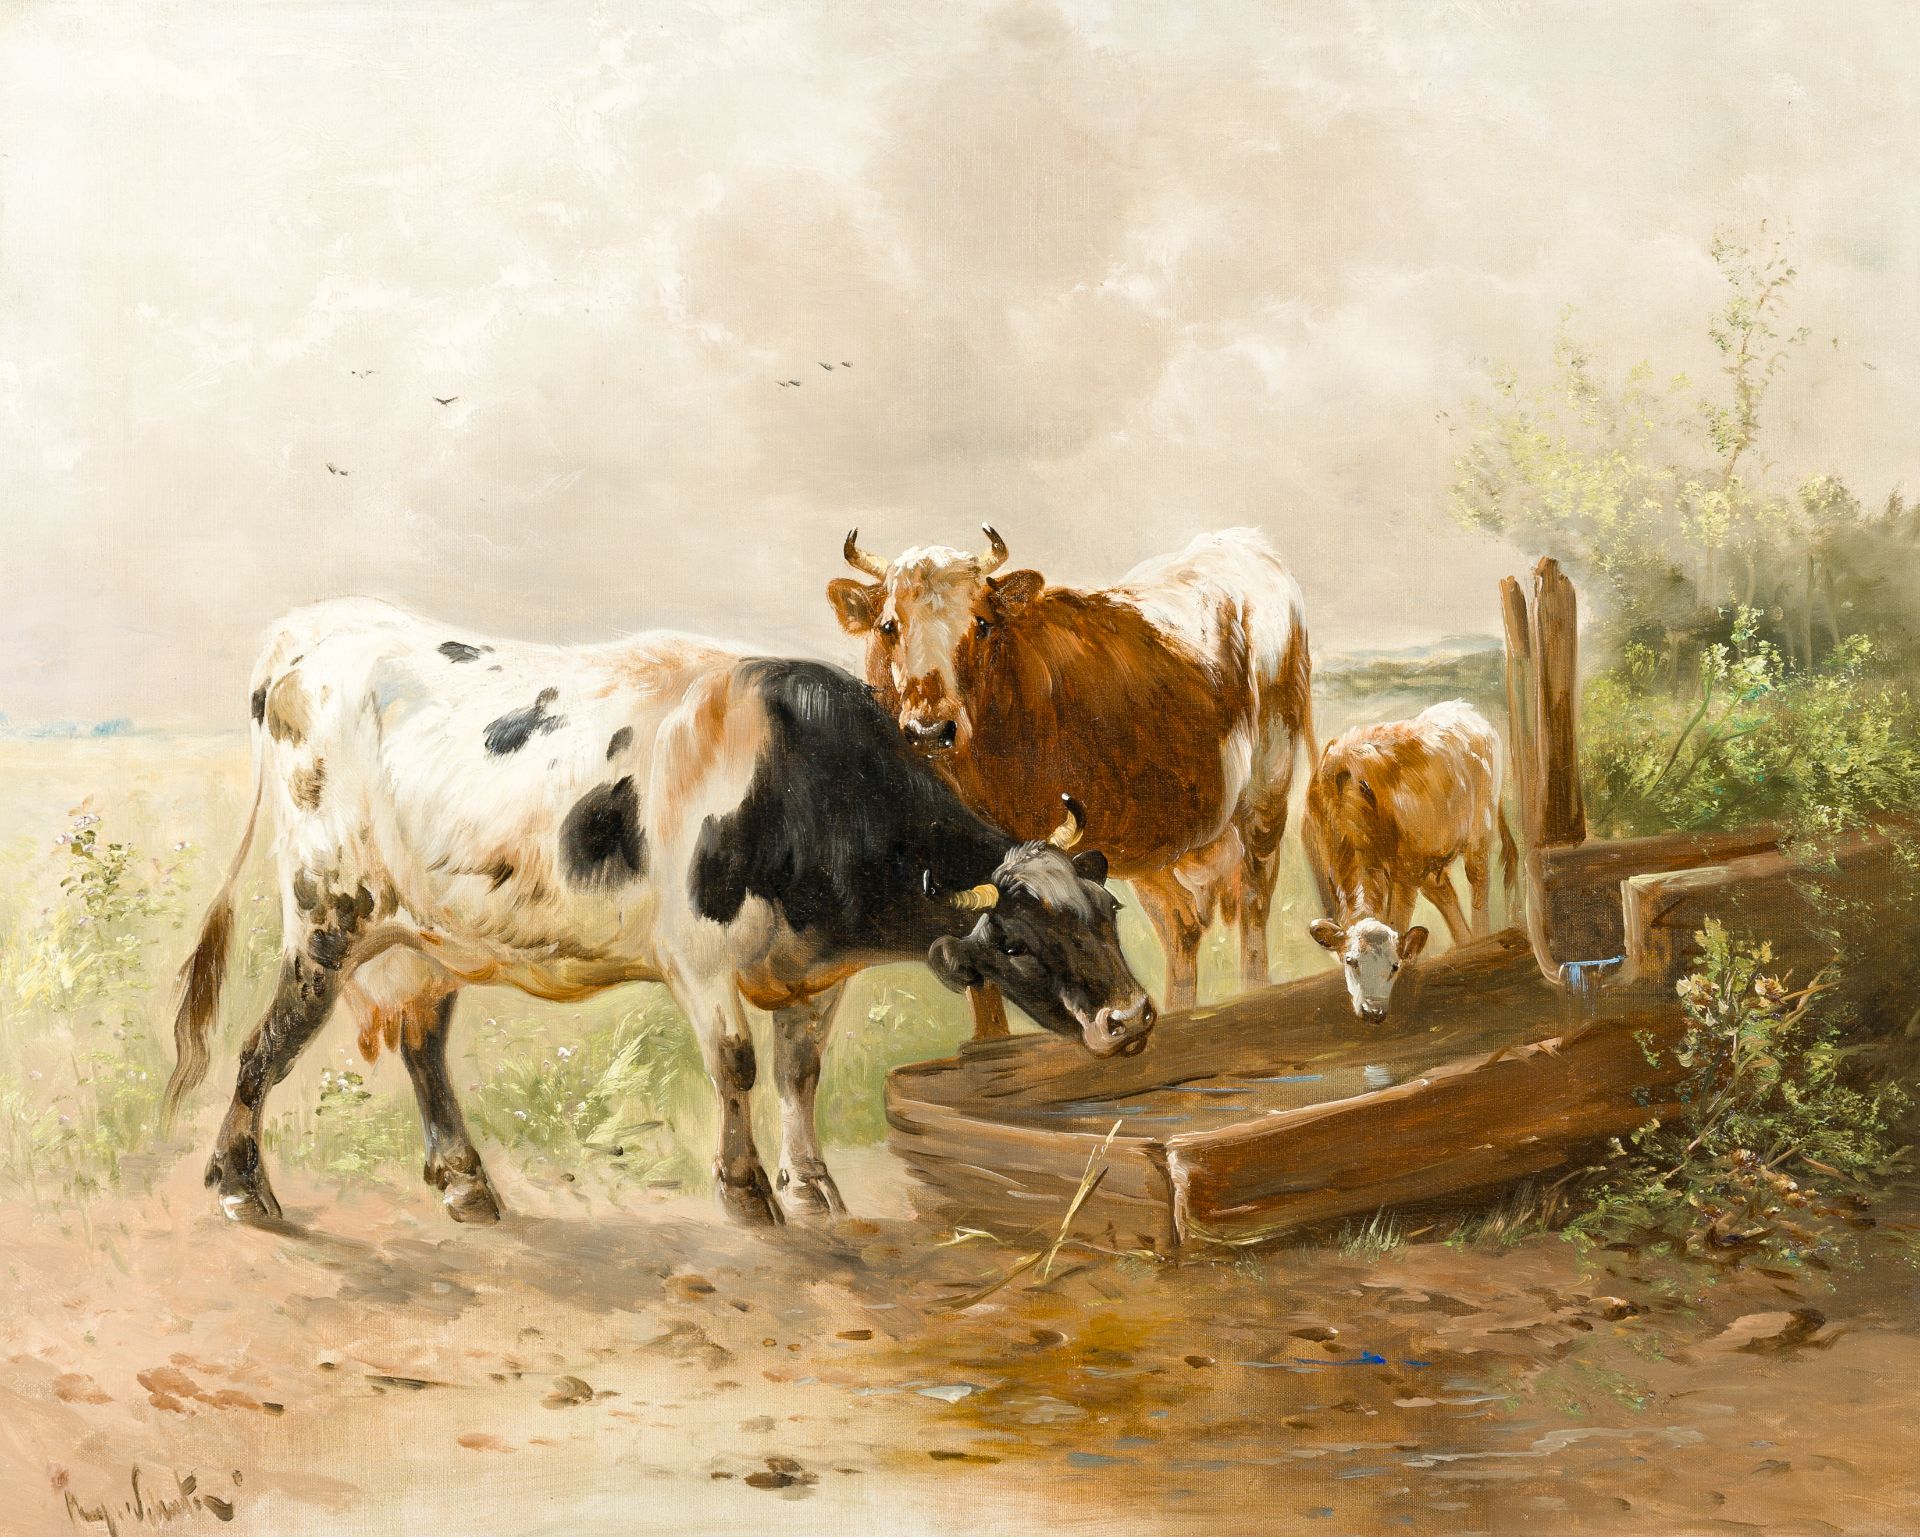 Henry Schouten (1857-1927): Cows in a landscape, oil on canvas